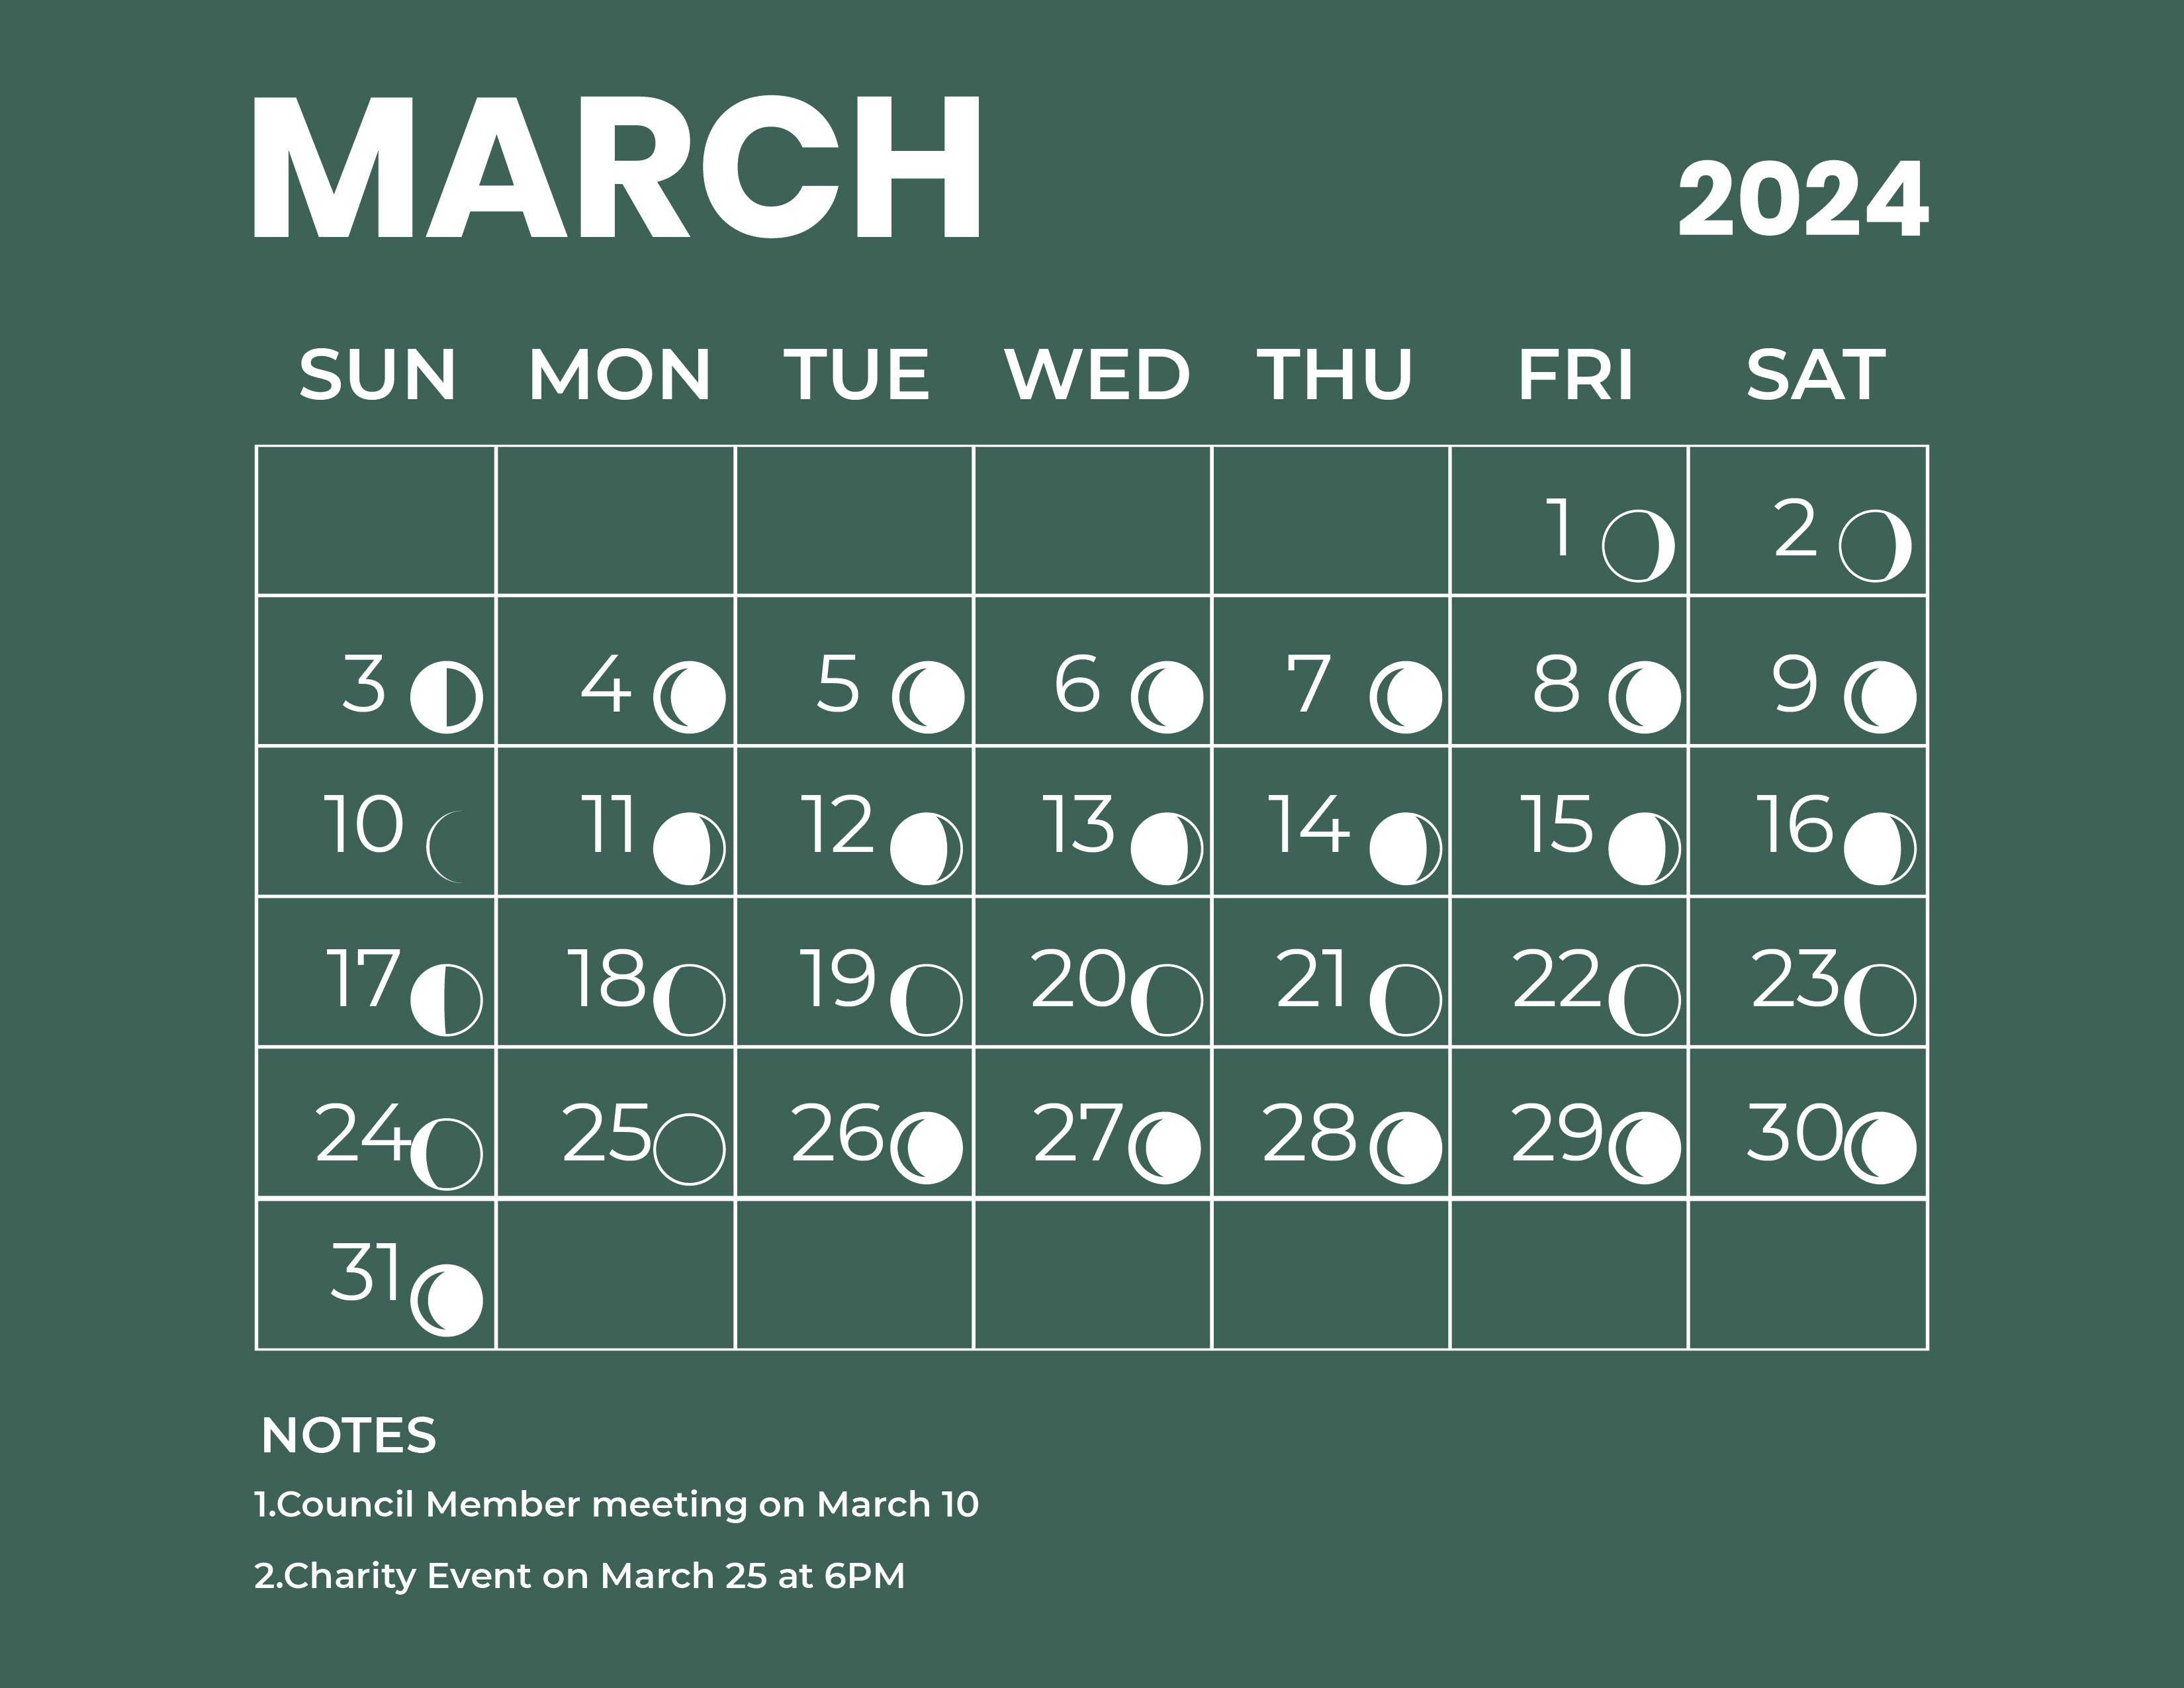 April 2024 Calendar With Moon Phases Ardeen Sharron